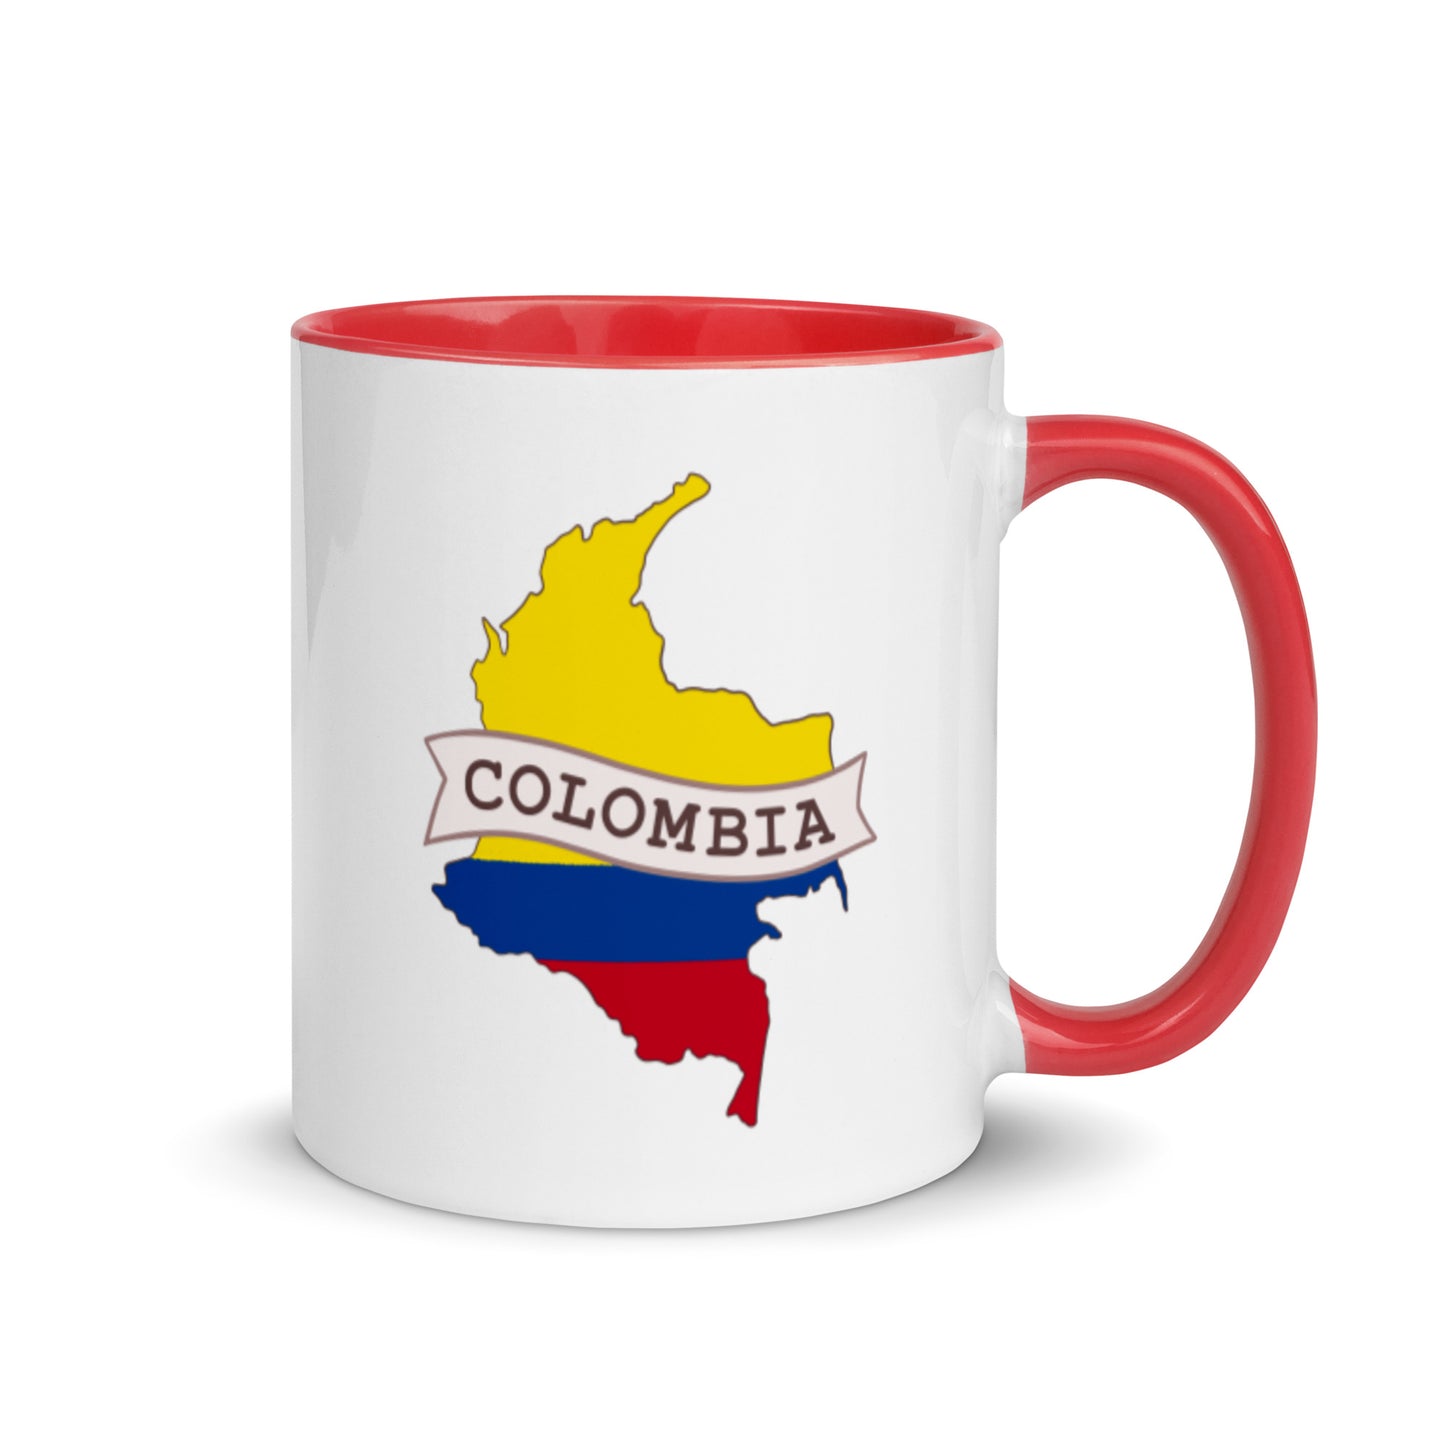 In Focus Colombian Mug